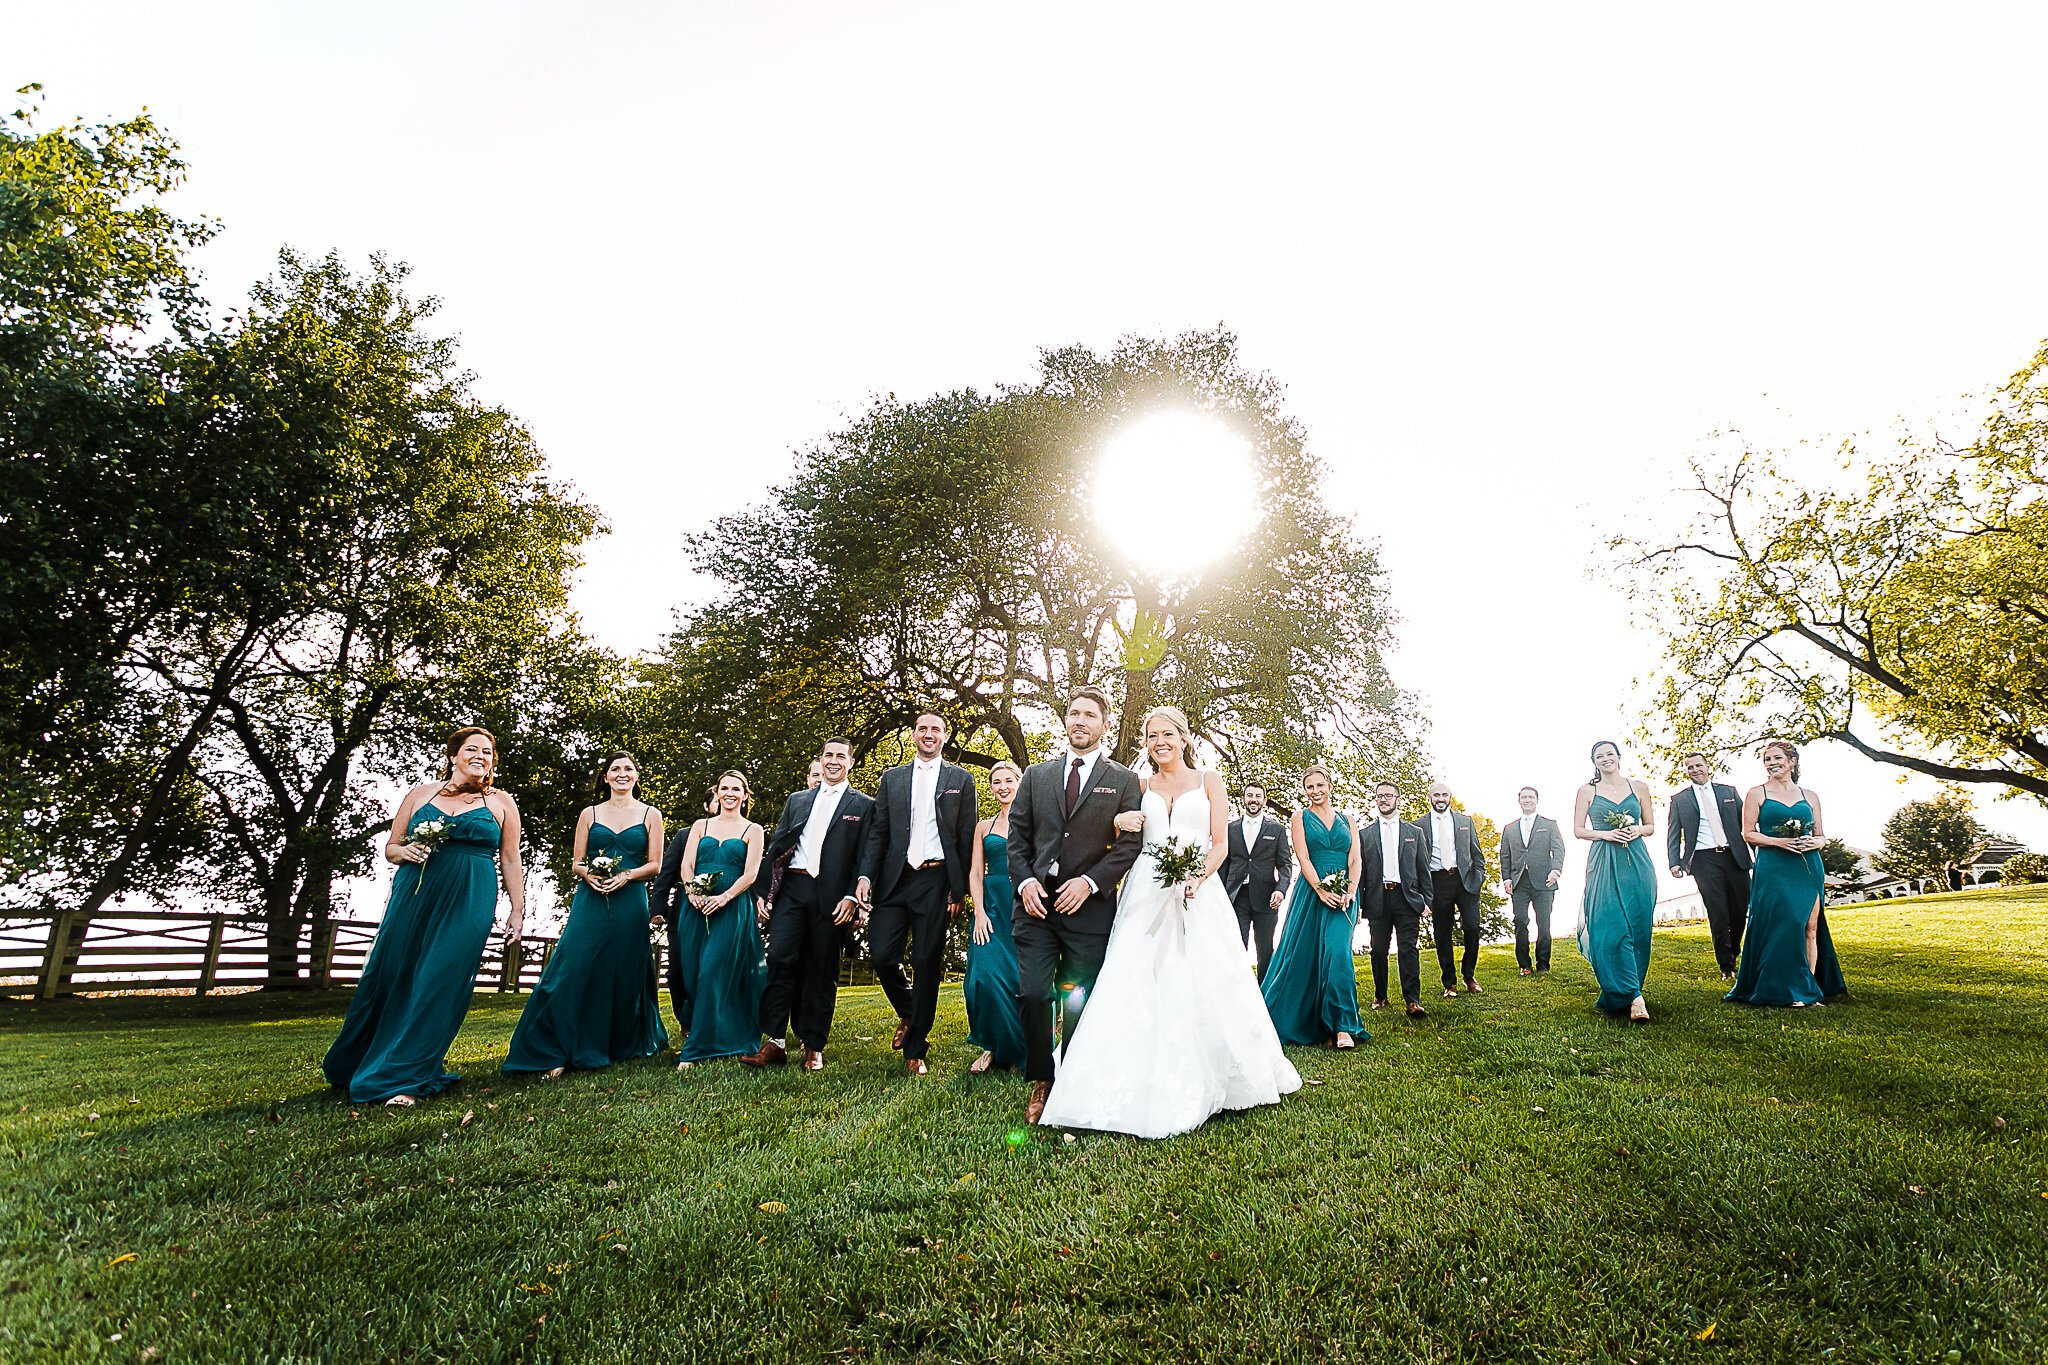  Walker's Overlook Wedding Photographer in Frederick, Maryland 